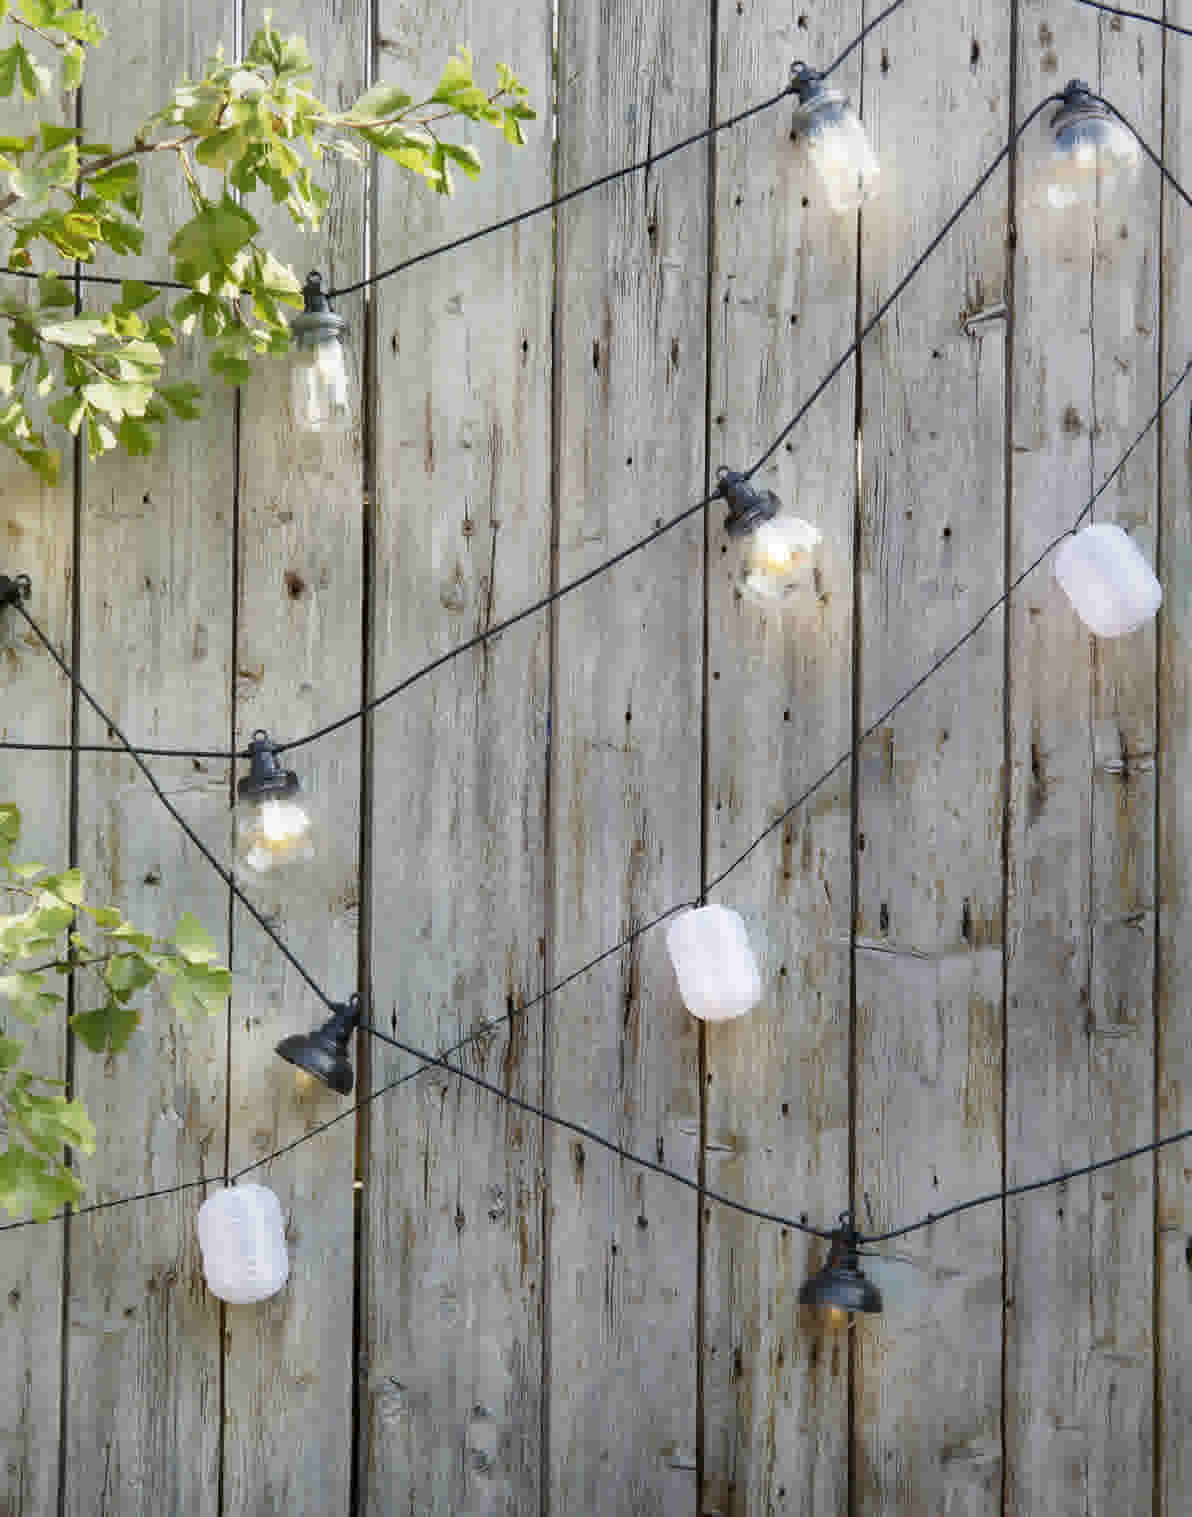 Tuinverlichting ideeën voor sfeervol licht in de tuin